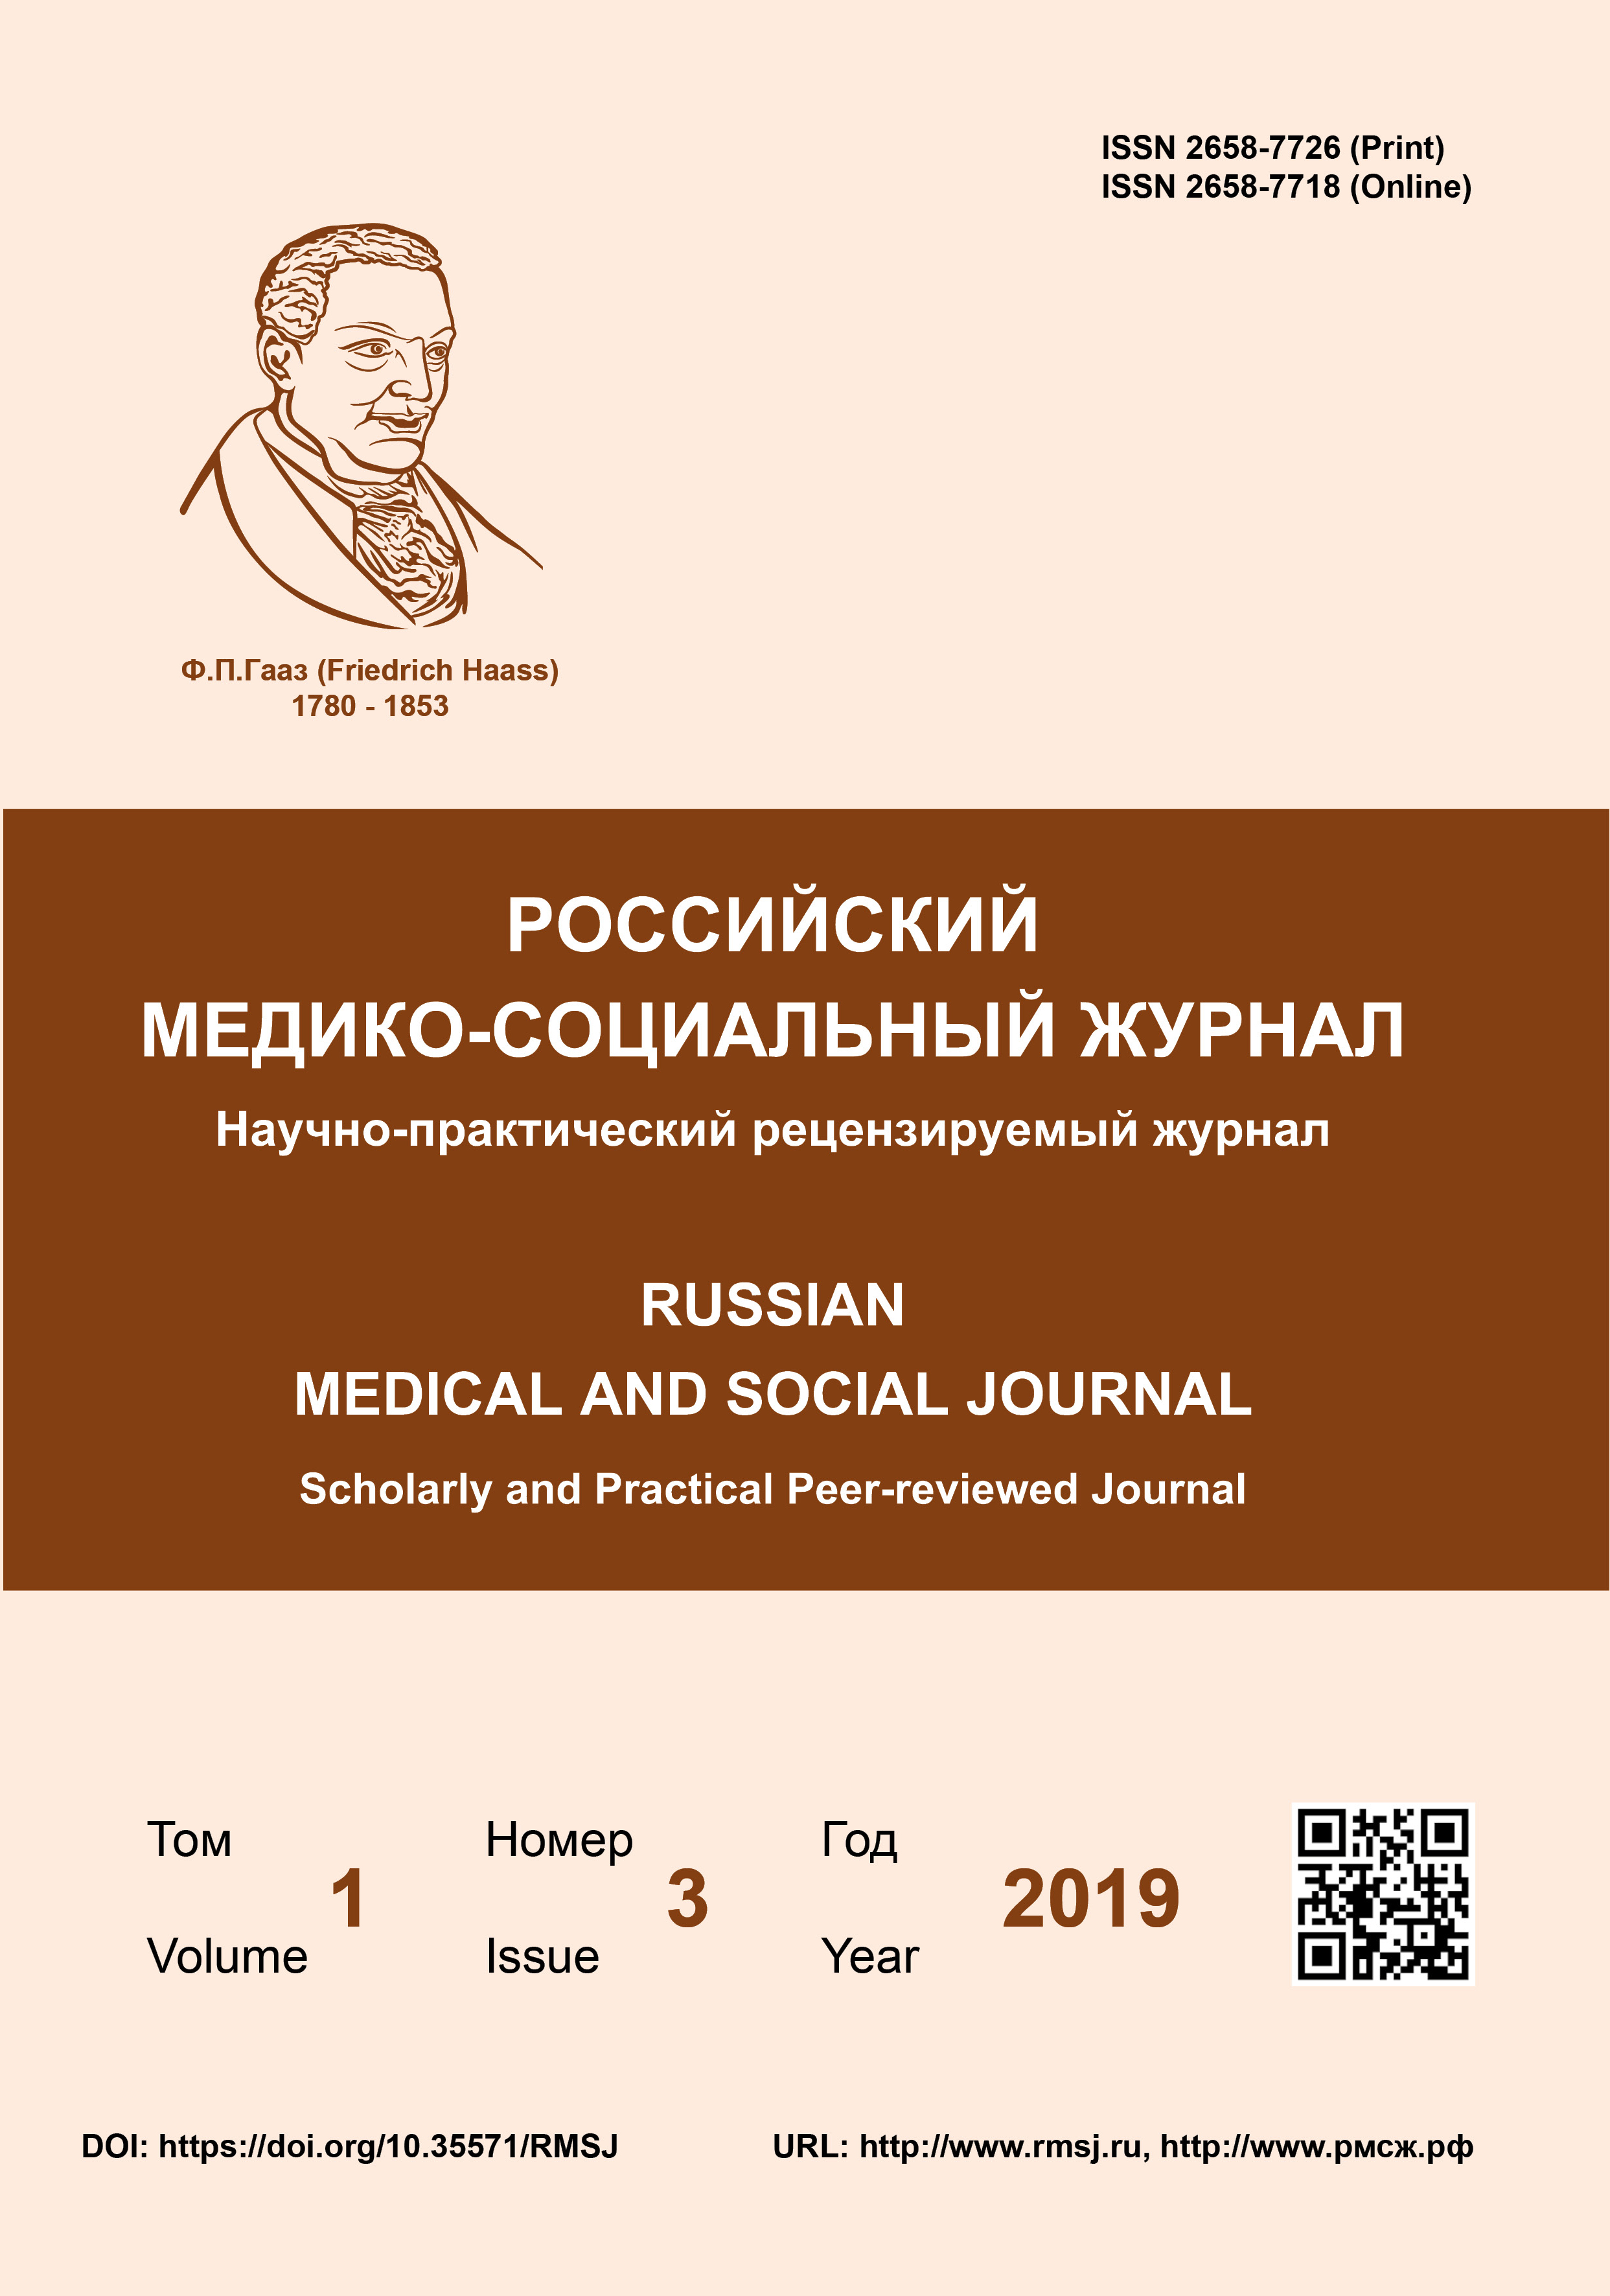             Российский медико-социальный журнал
    